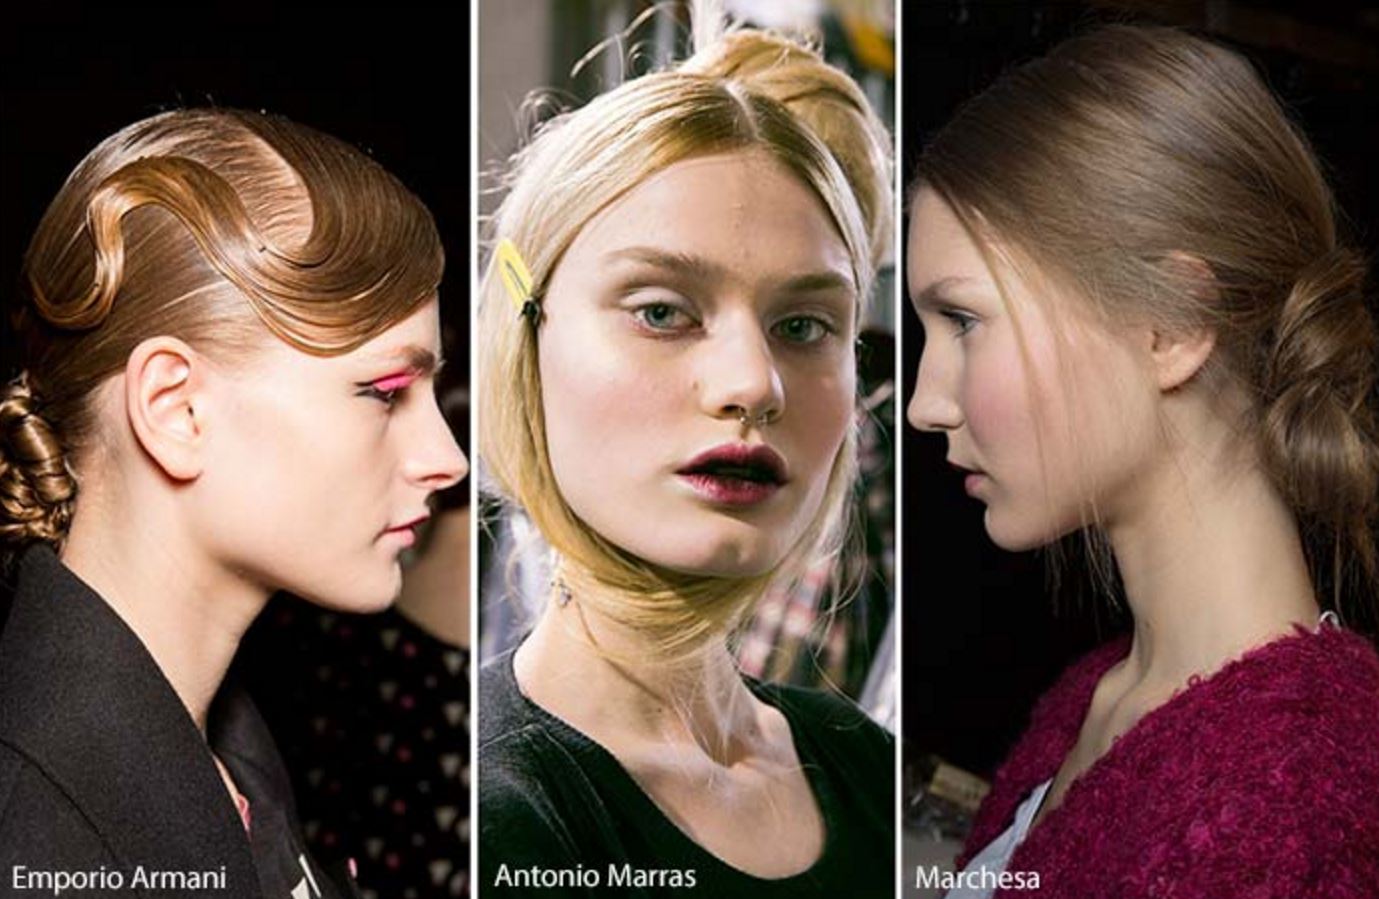 Gercekten Farkli Olmak İsteyen Hanimlarin Saç Modelleri